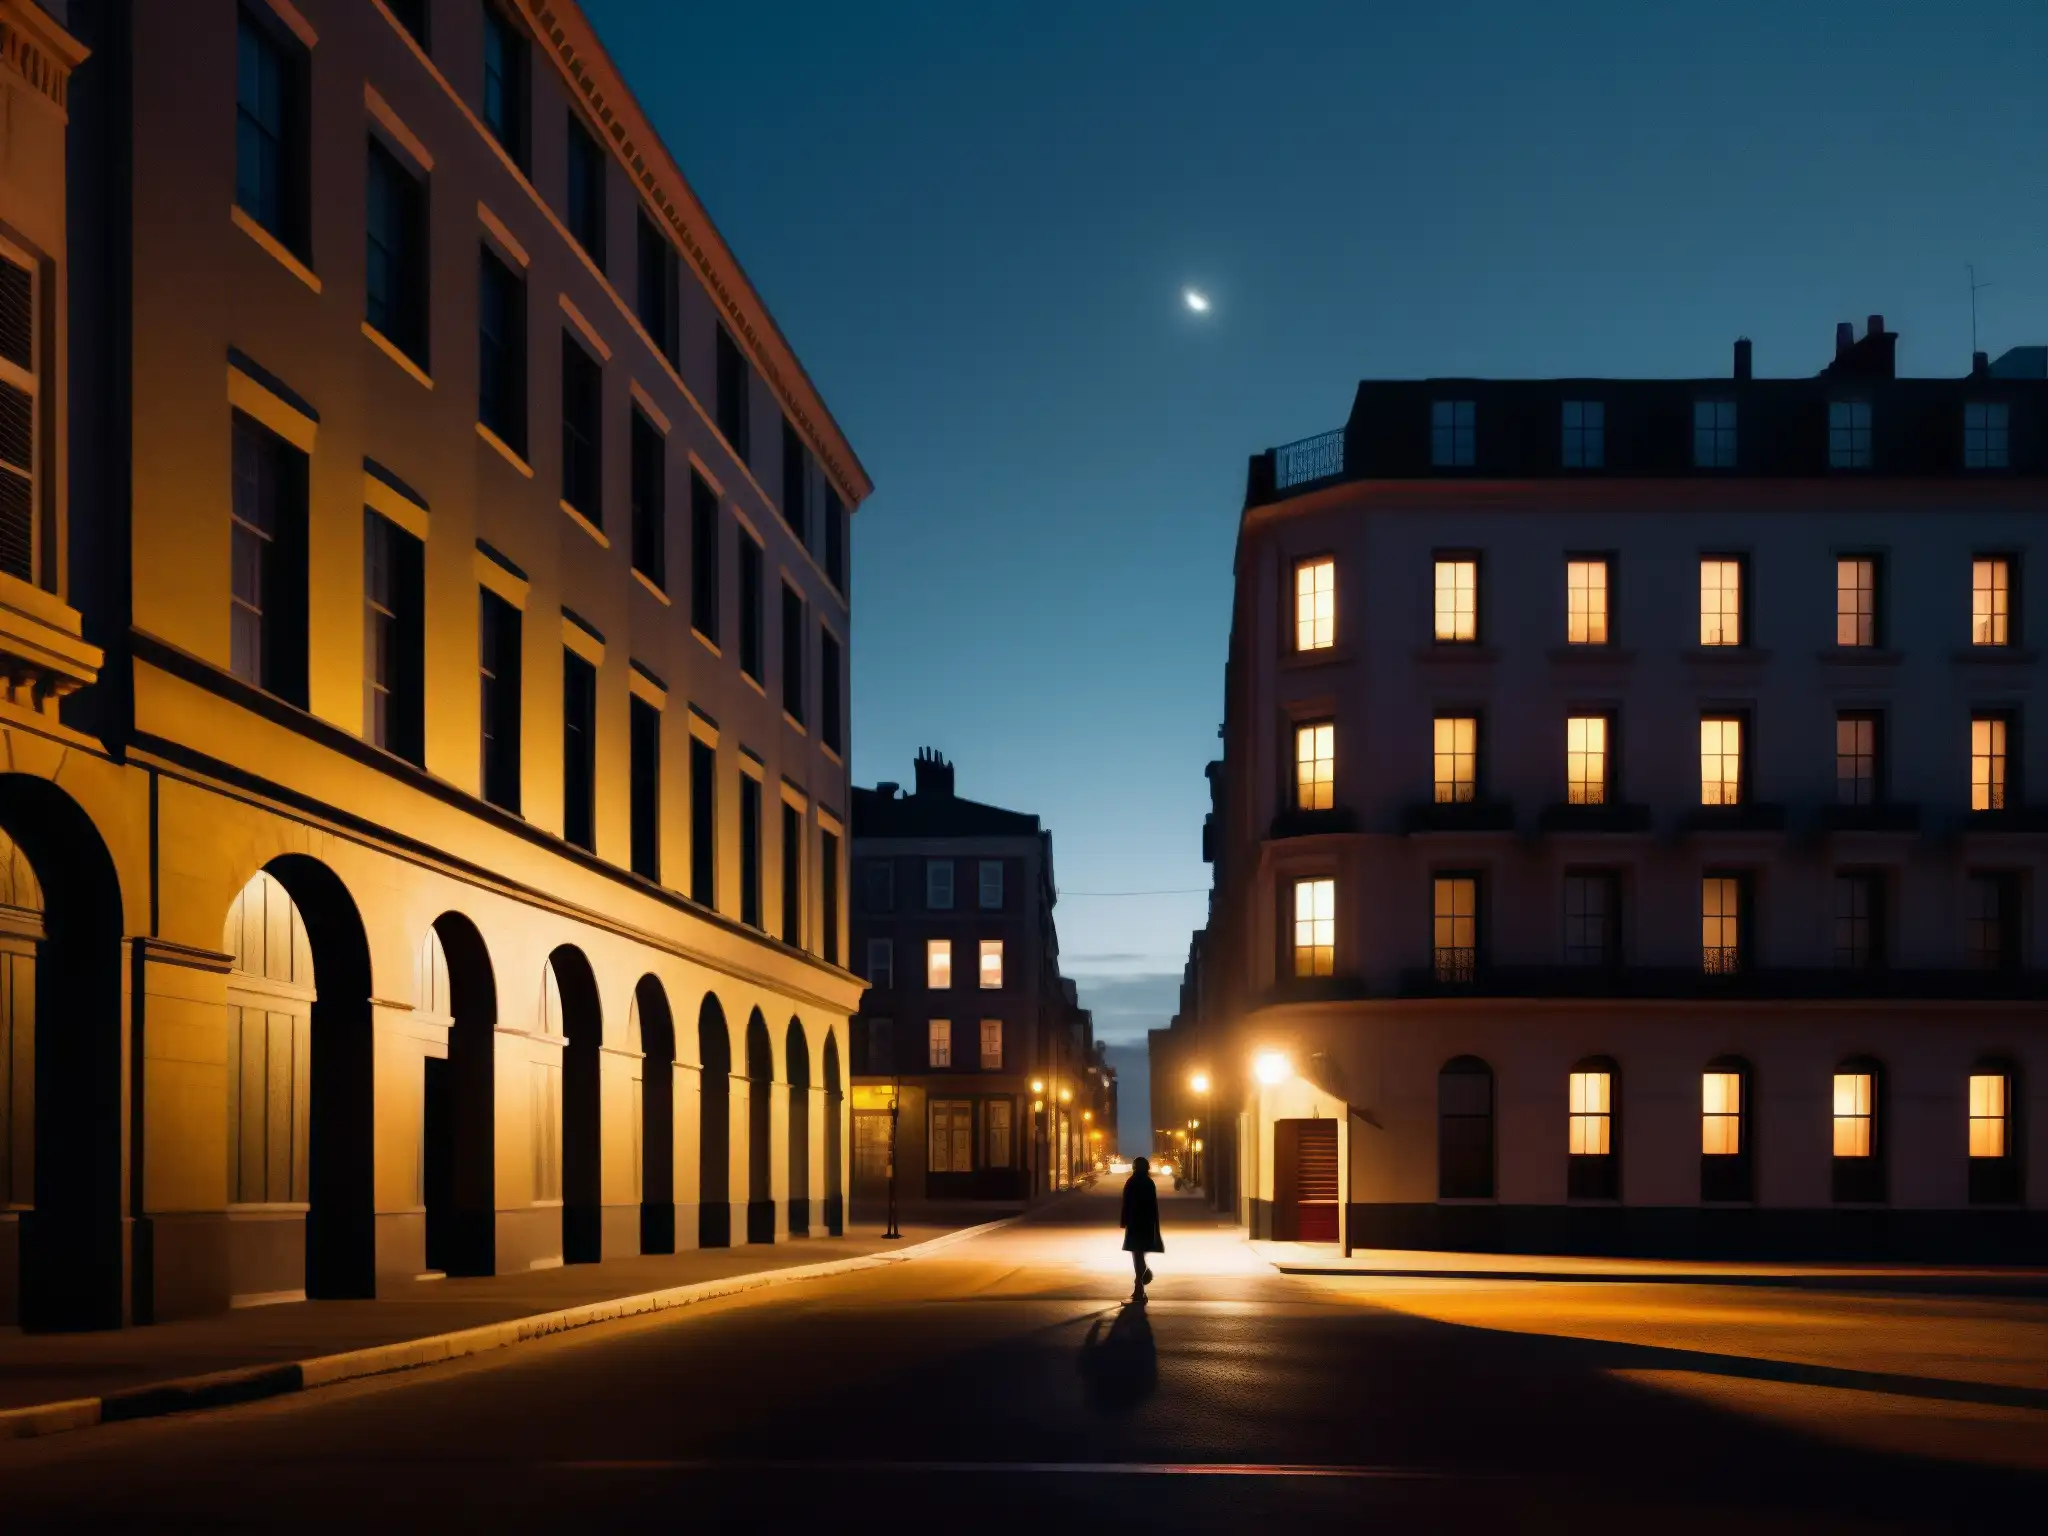 Una calle urbana oscura y solitaria de noche, con una figura caminando bajo la luz parpadeante de una farola